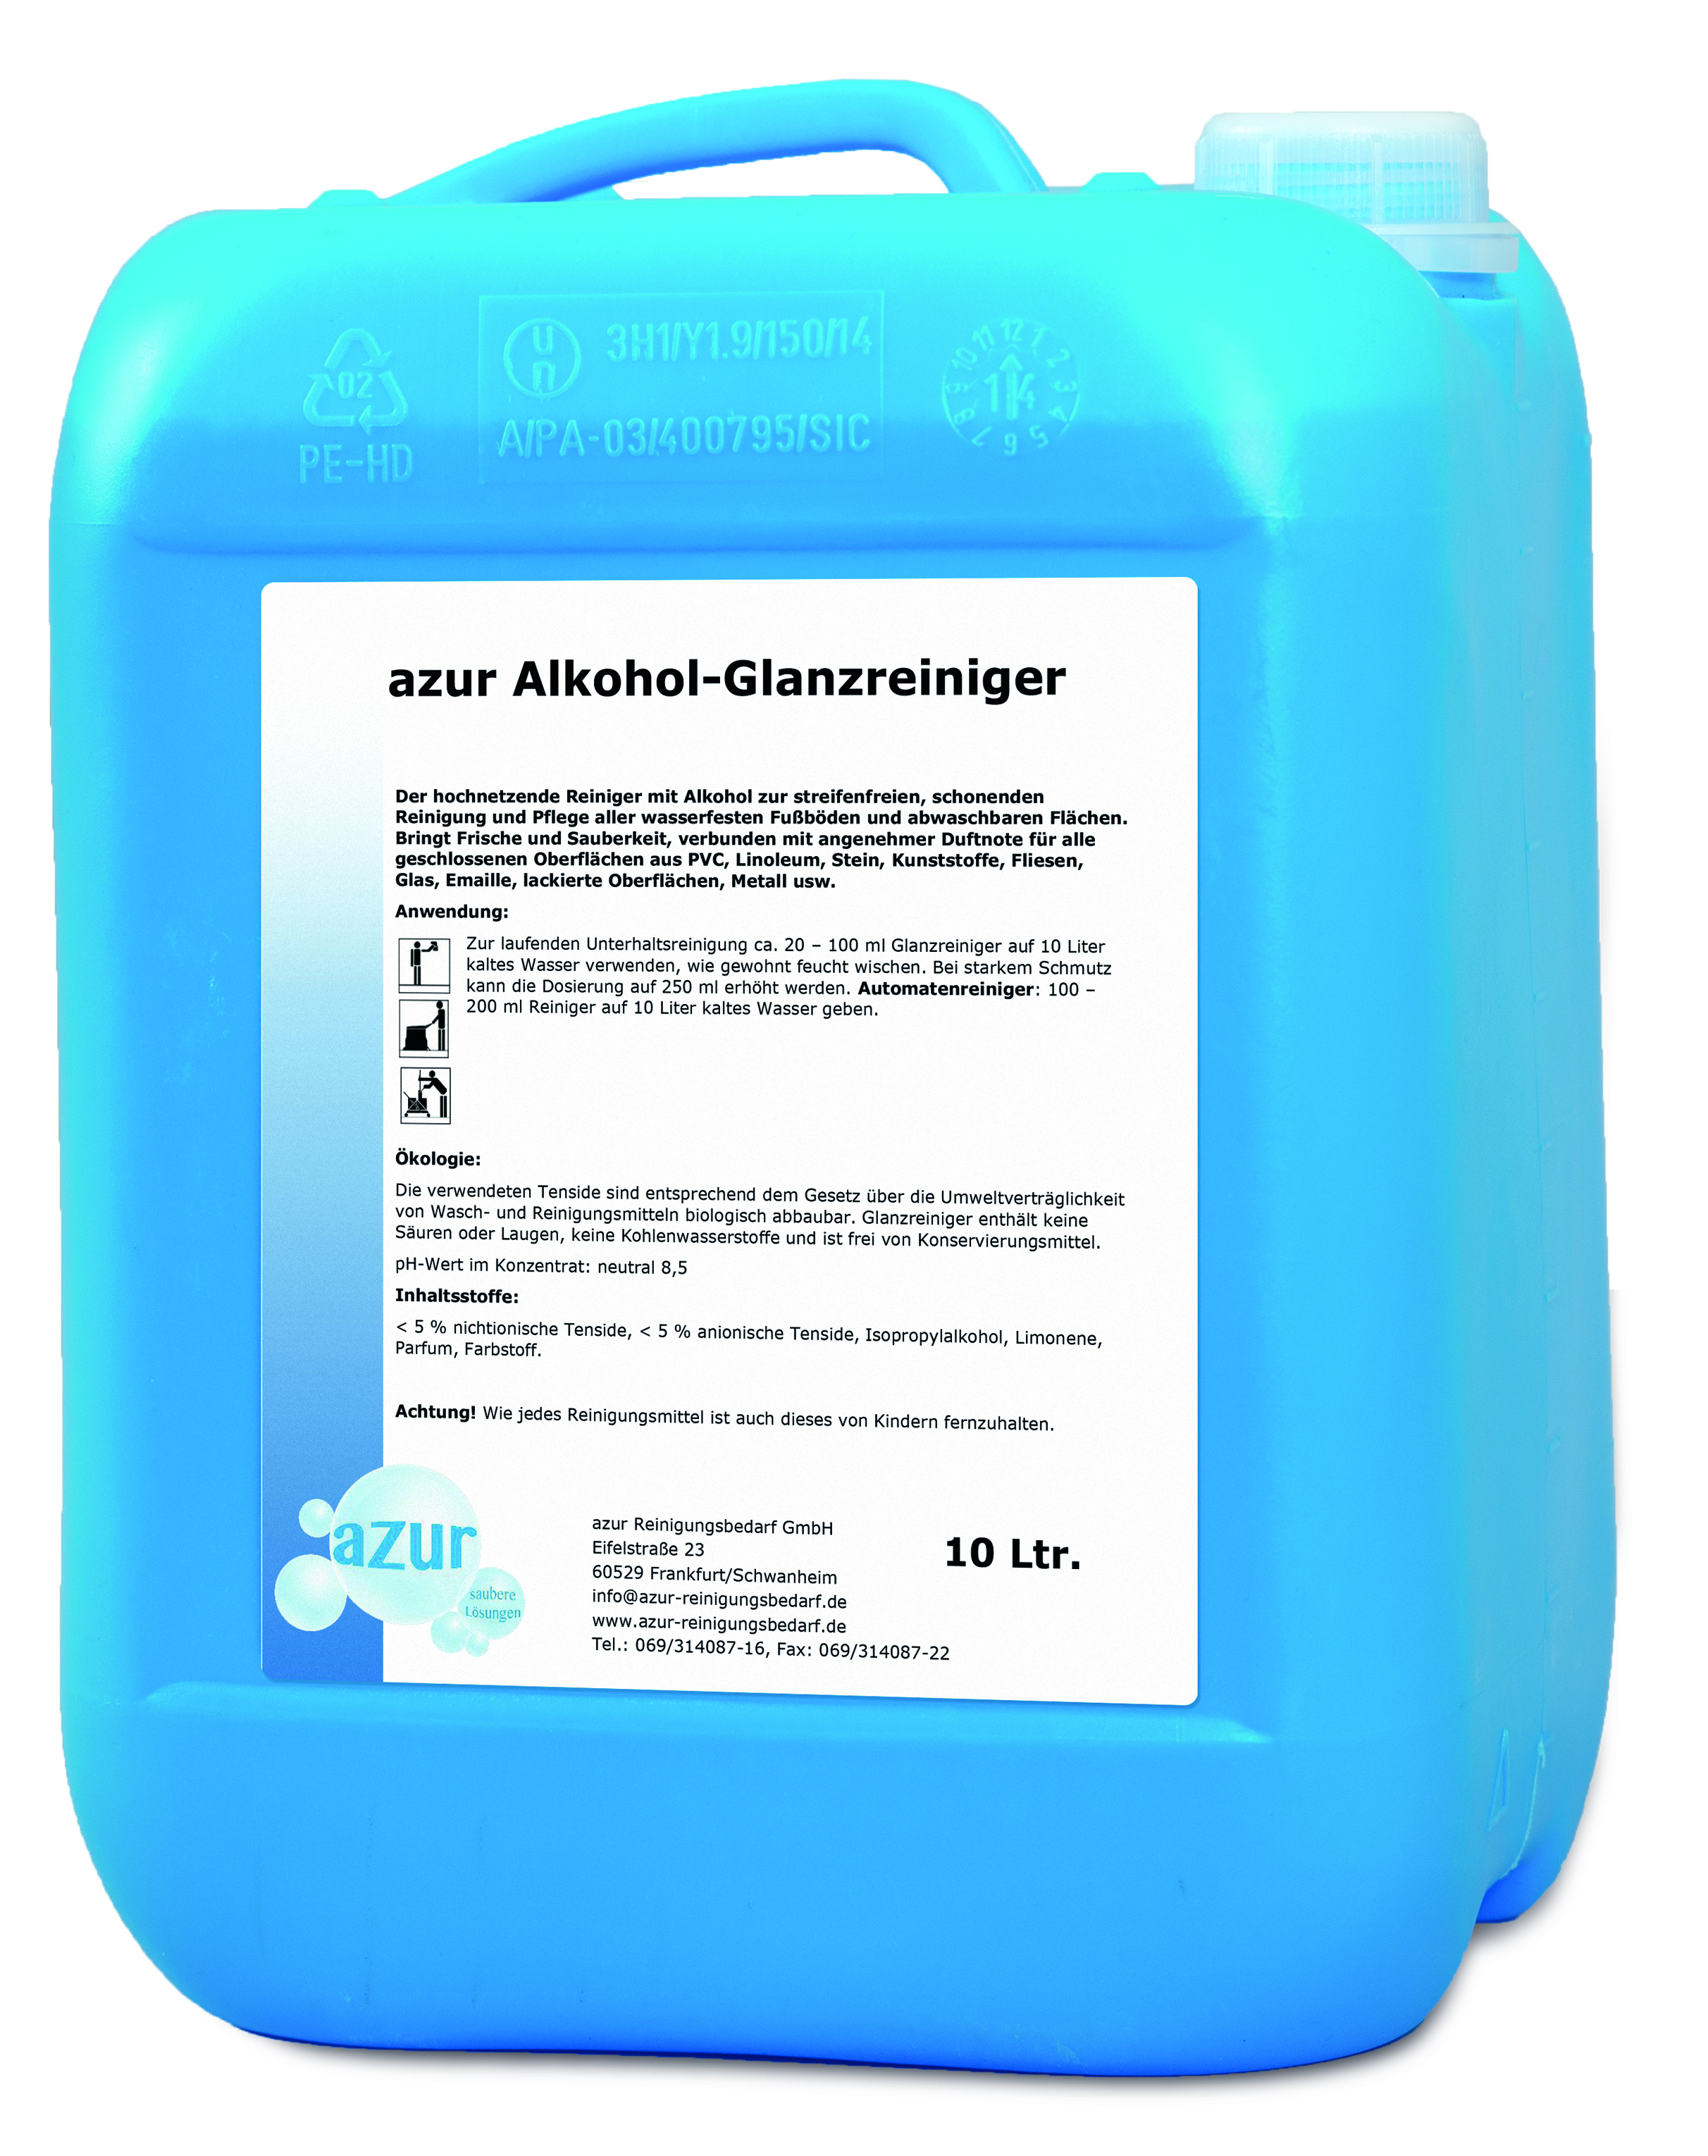 azur Alkohol-Glanzreiniger-Konzentrat